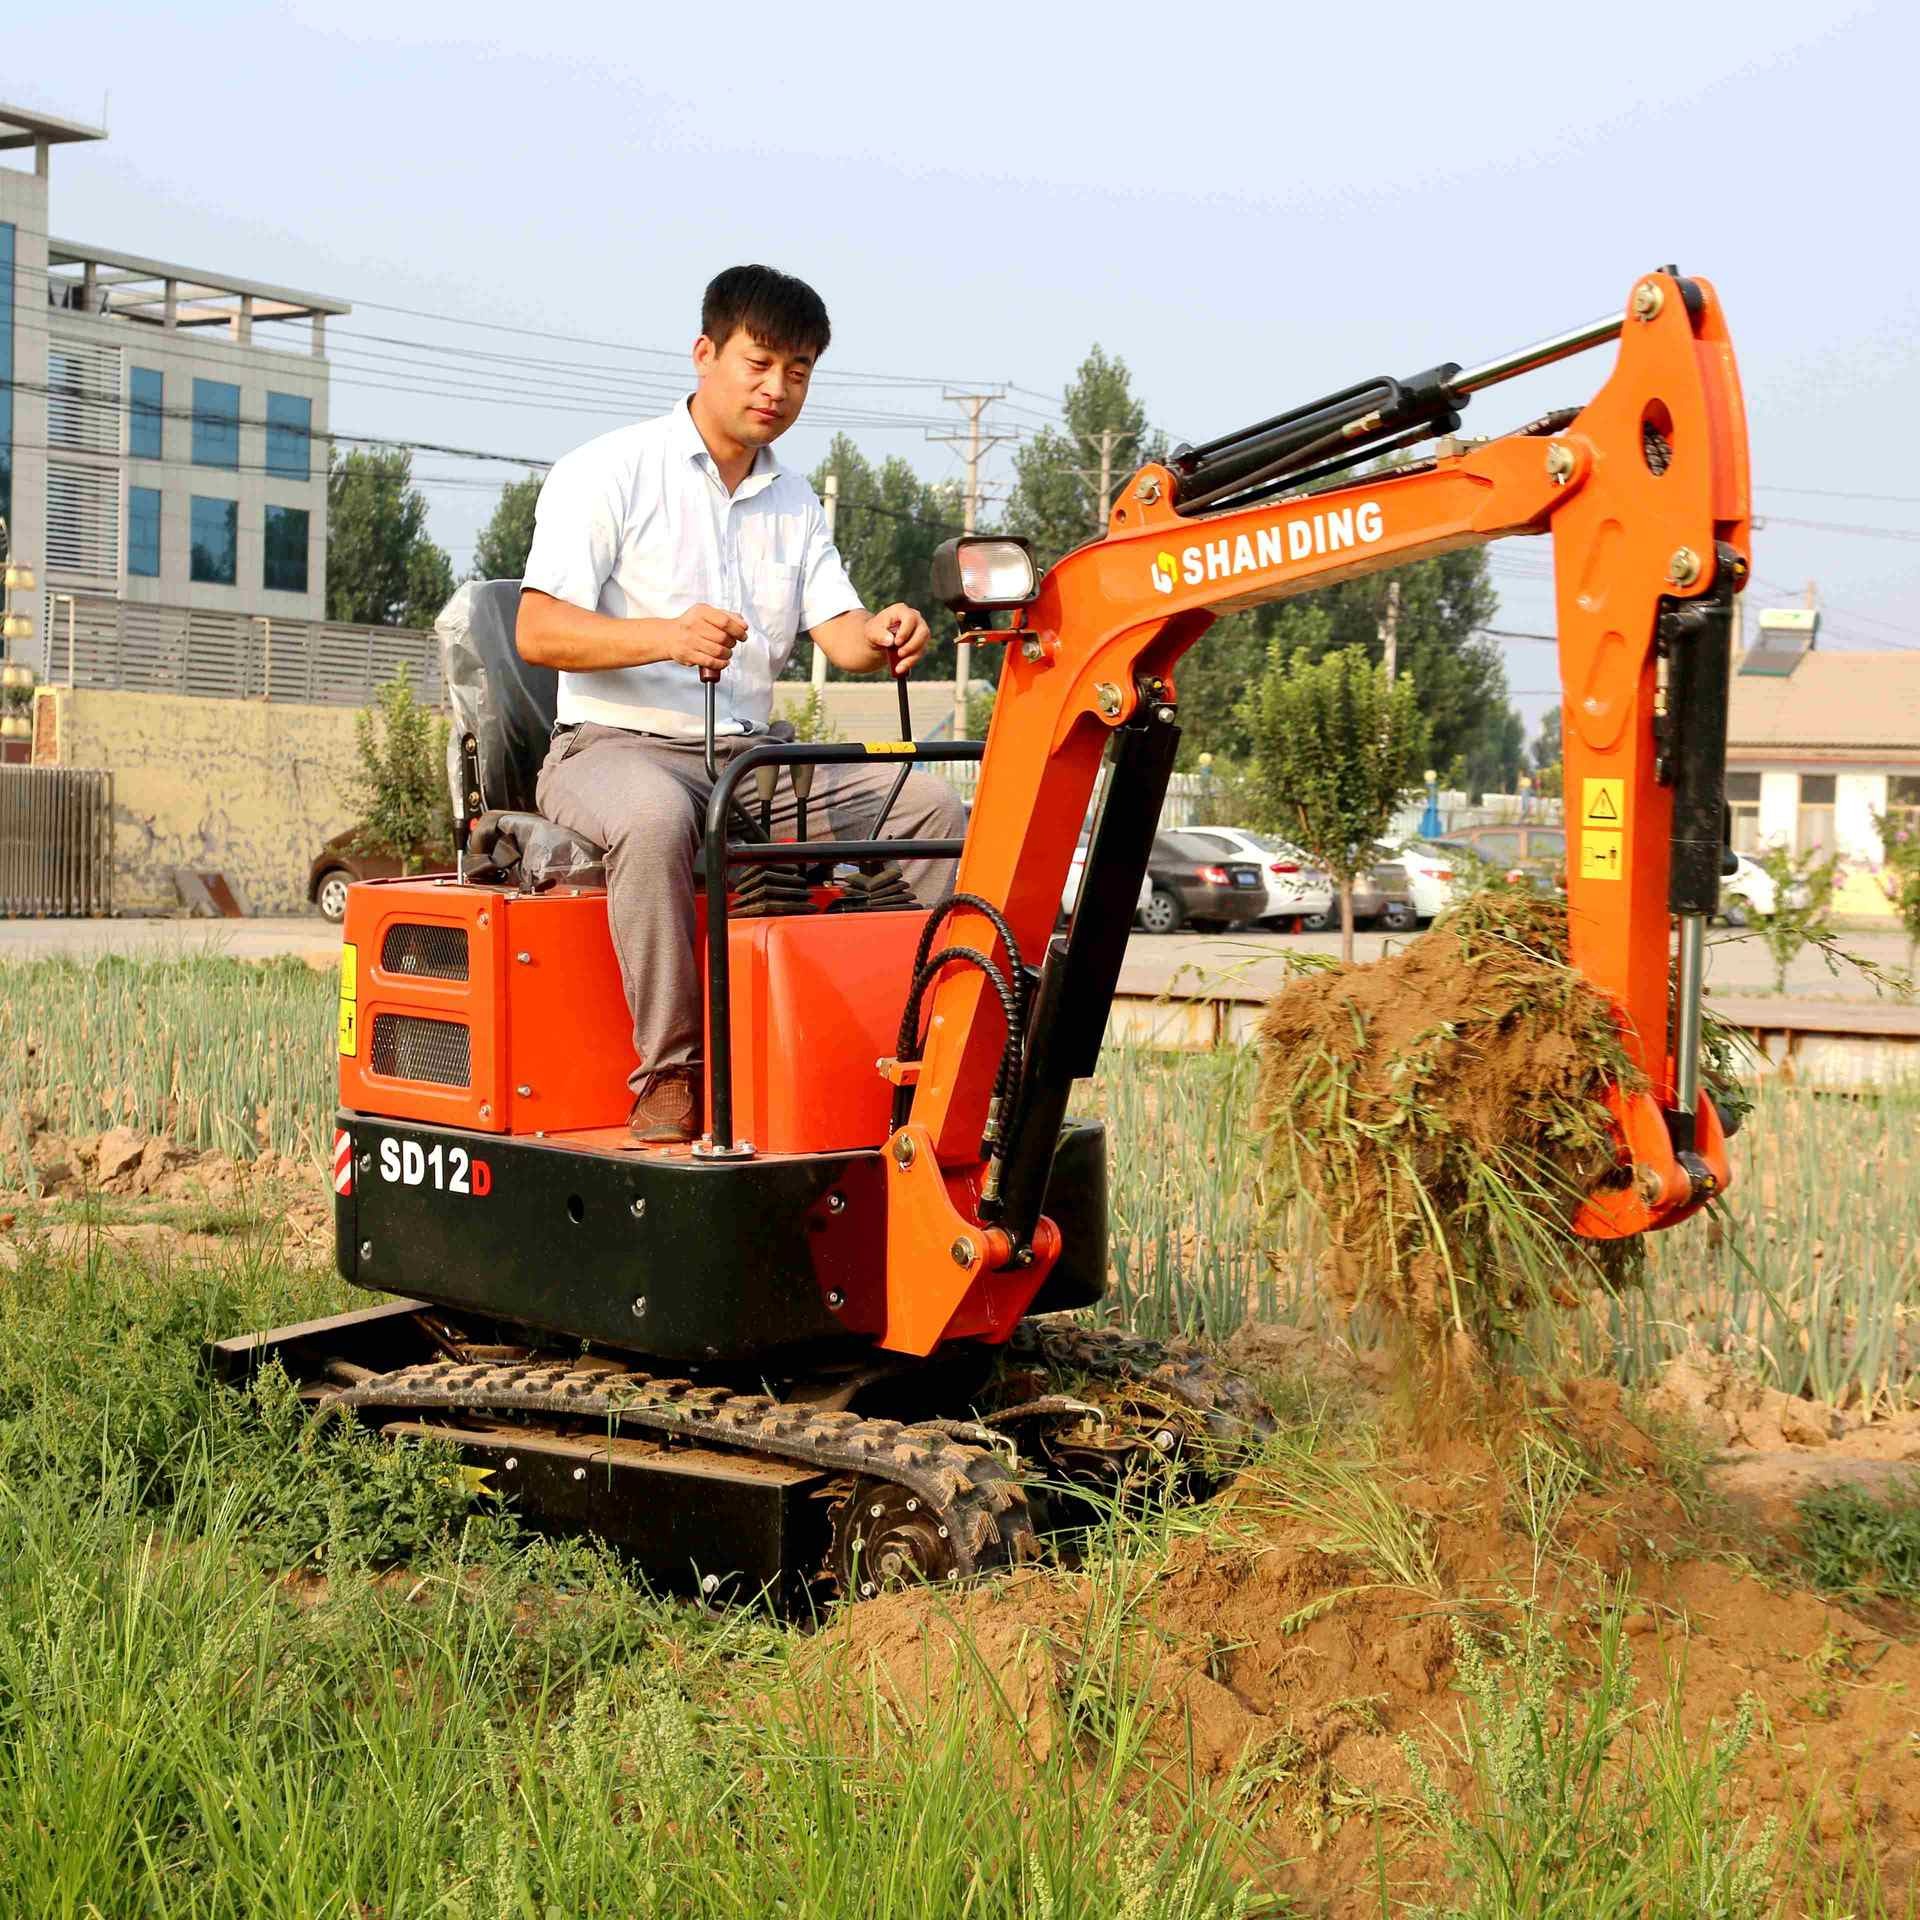 EC120D_沃尔沃中大型挖掘机_沃尔沃建筑设备_产品中心-浙江立洋机械有限公司